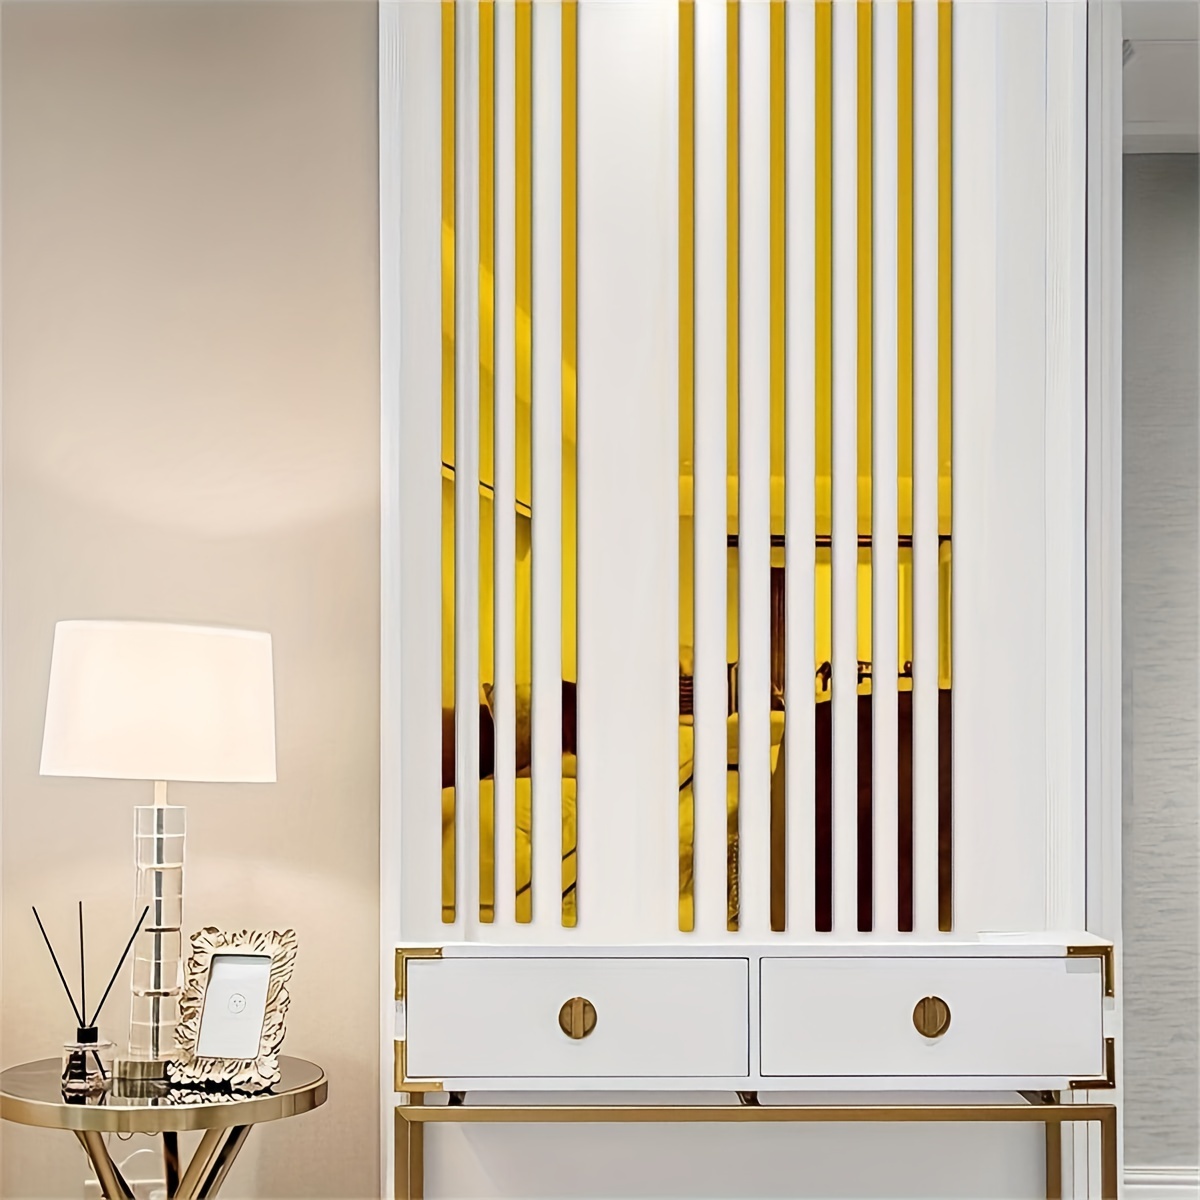 Hywell 5 Meter Edelstahl flache dekorative Linien Wandaufkleber Silber  Titan Gold Hintergrund Wand Decke Kante Leiste Selbstklebend